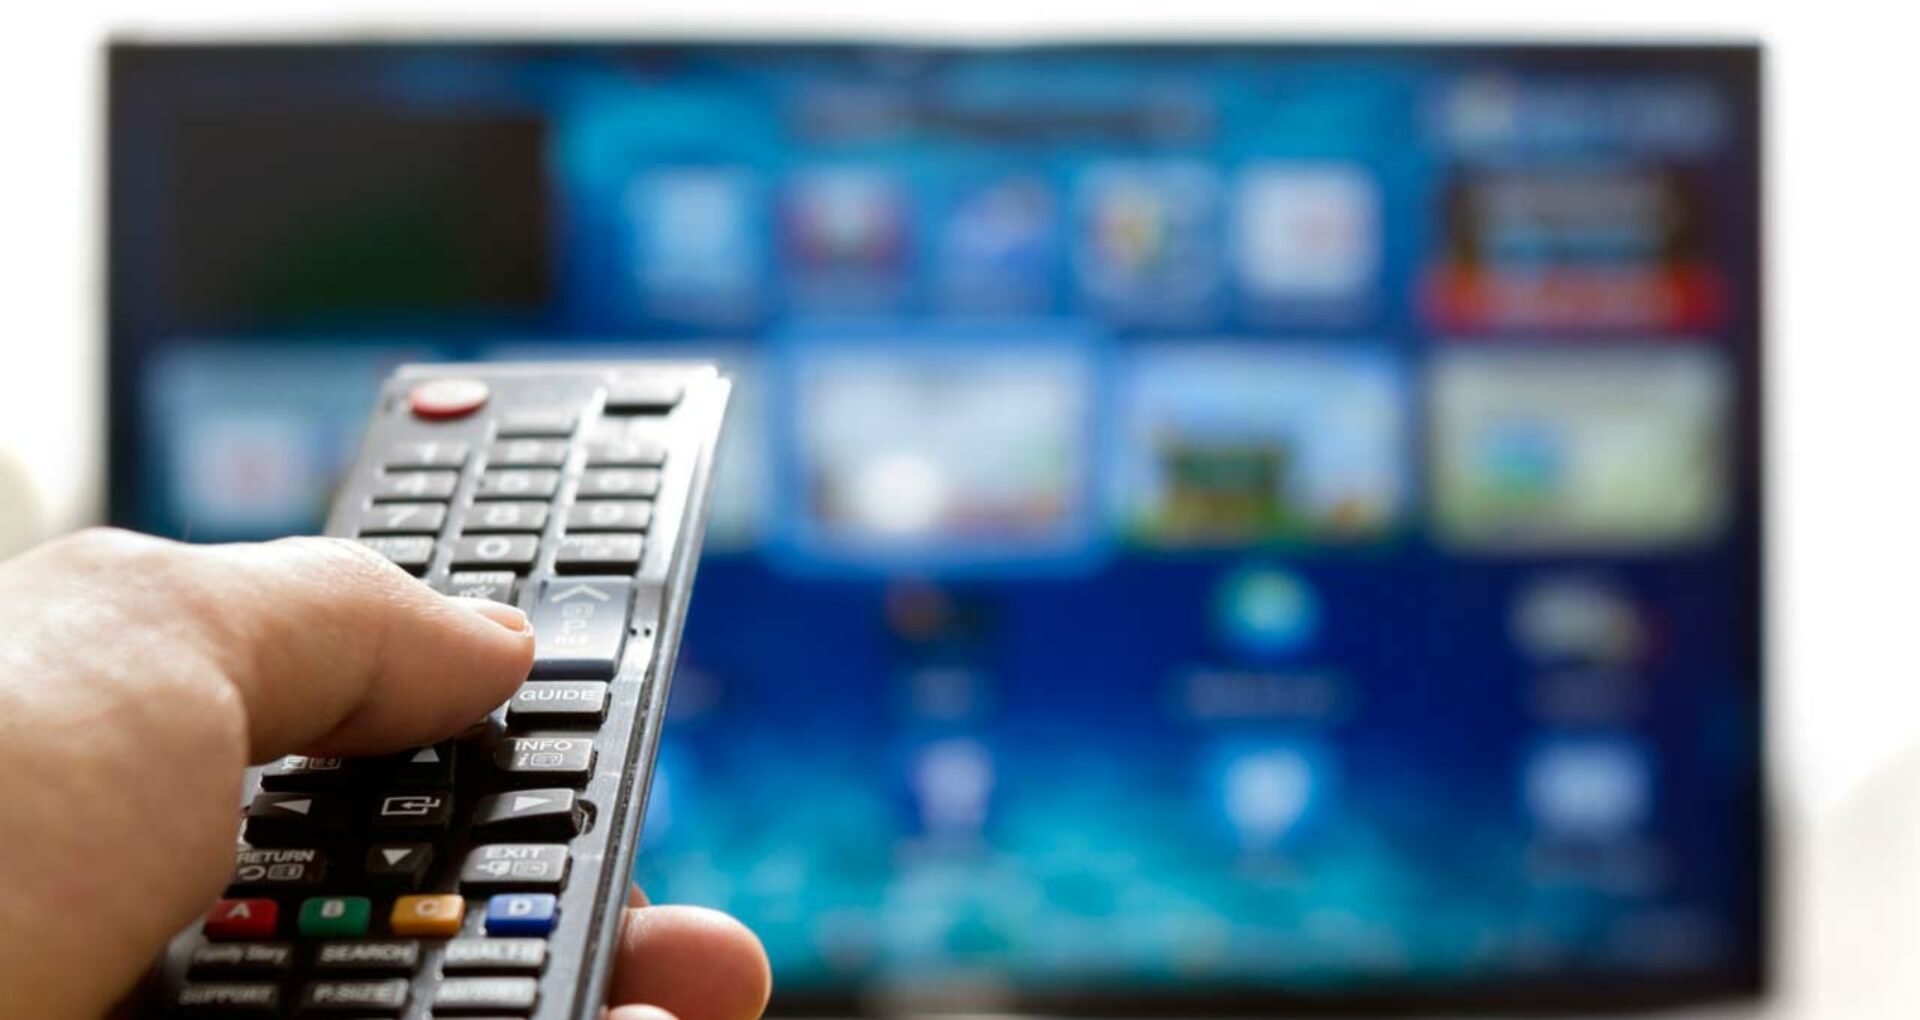 Piața serviciilor de televiziune furnizate contra plată prin tehnologia IPTV continuă să înregistreze creșteri